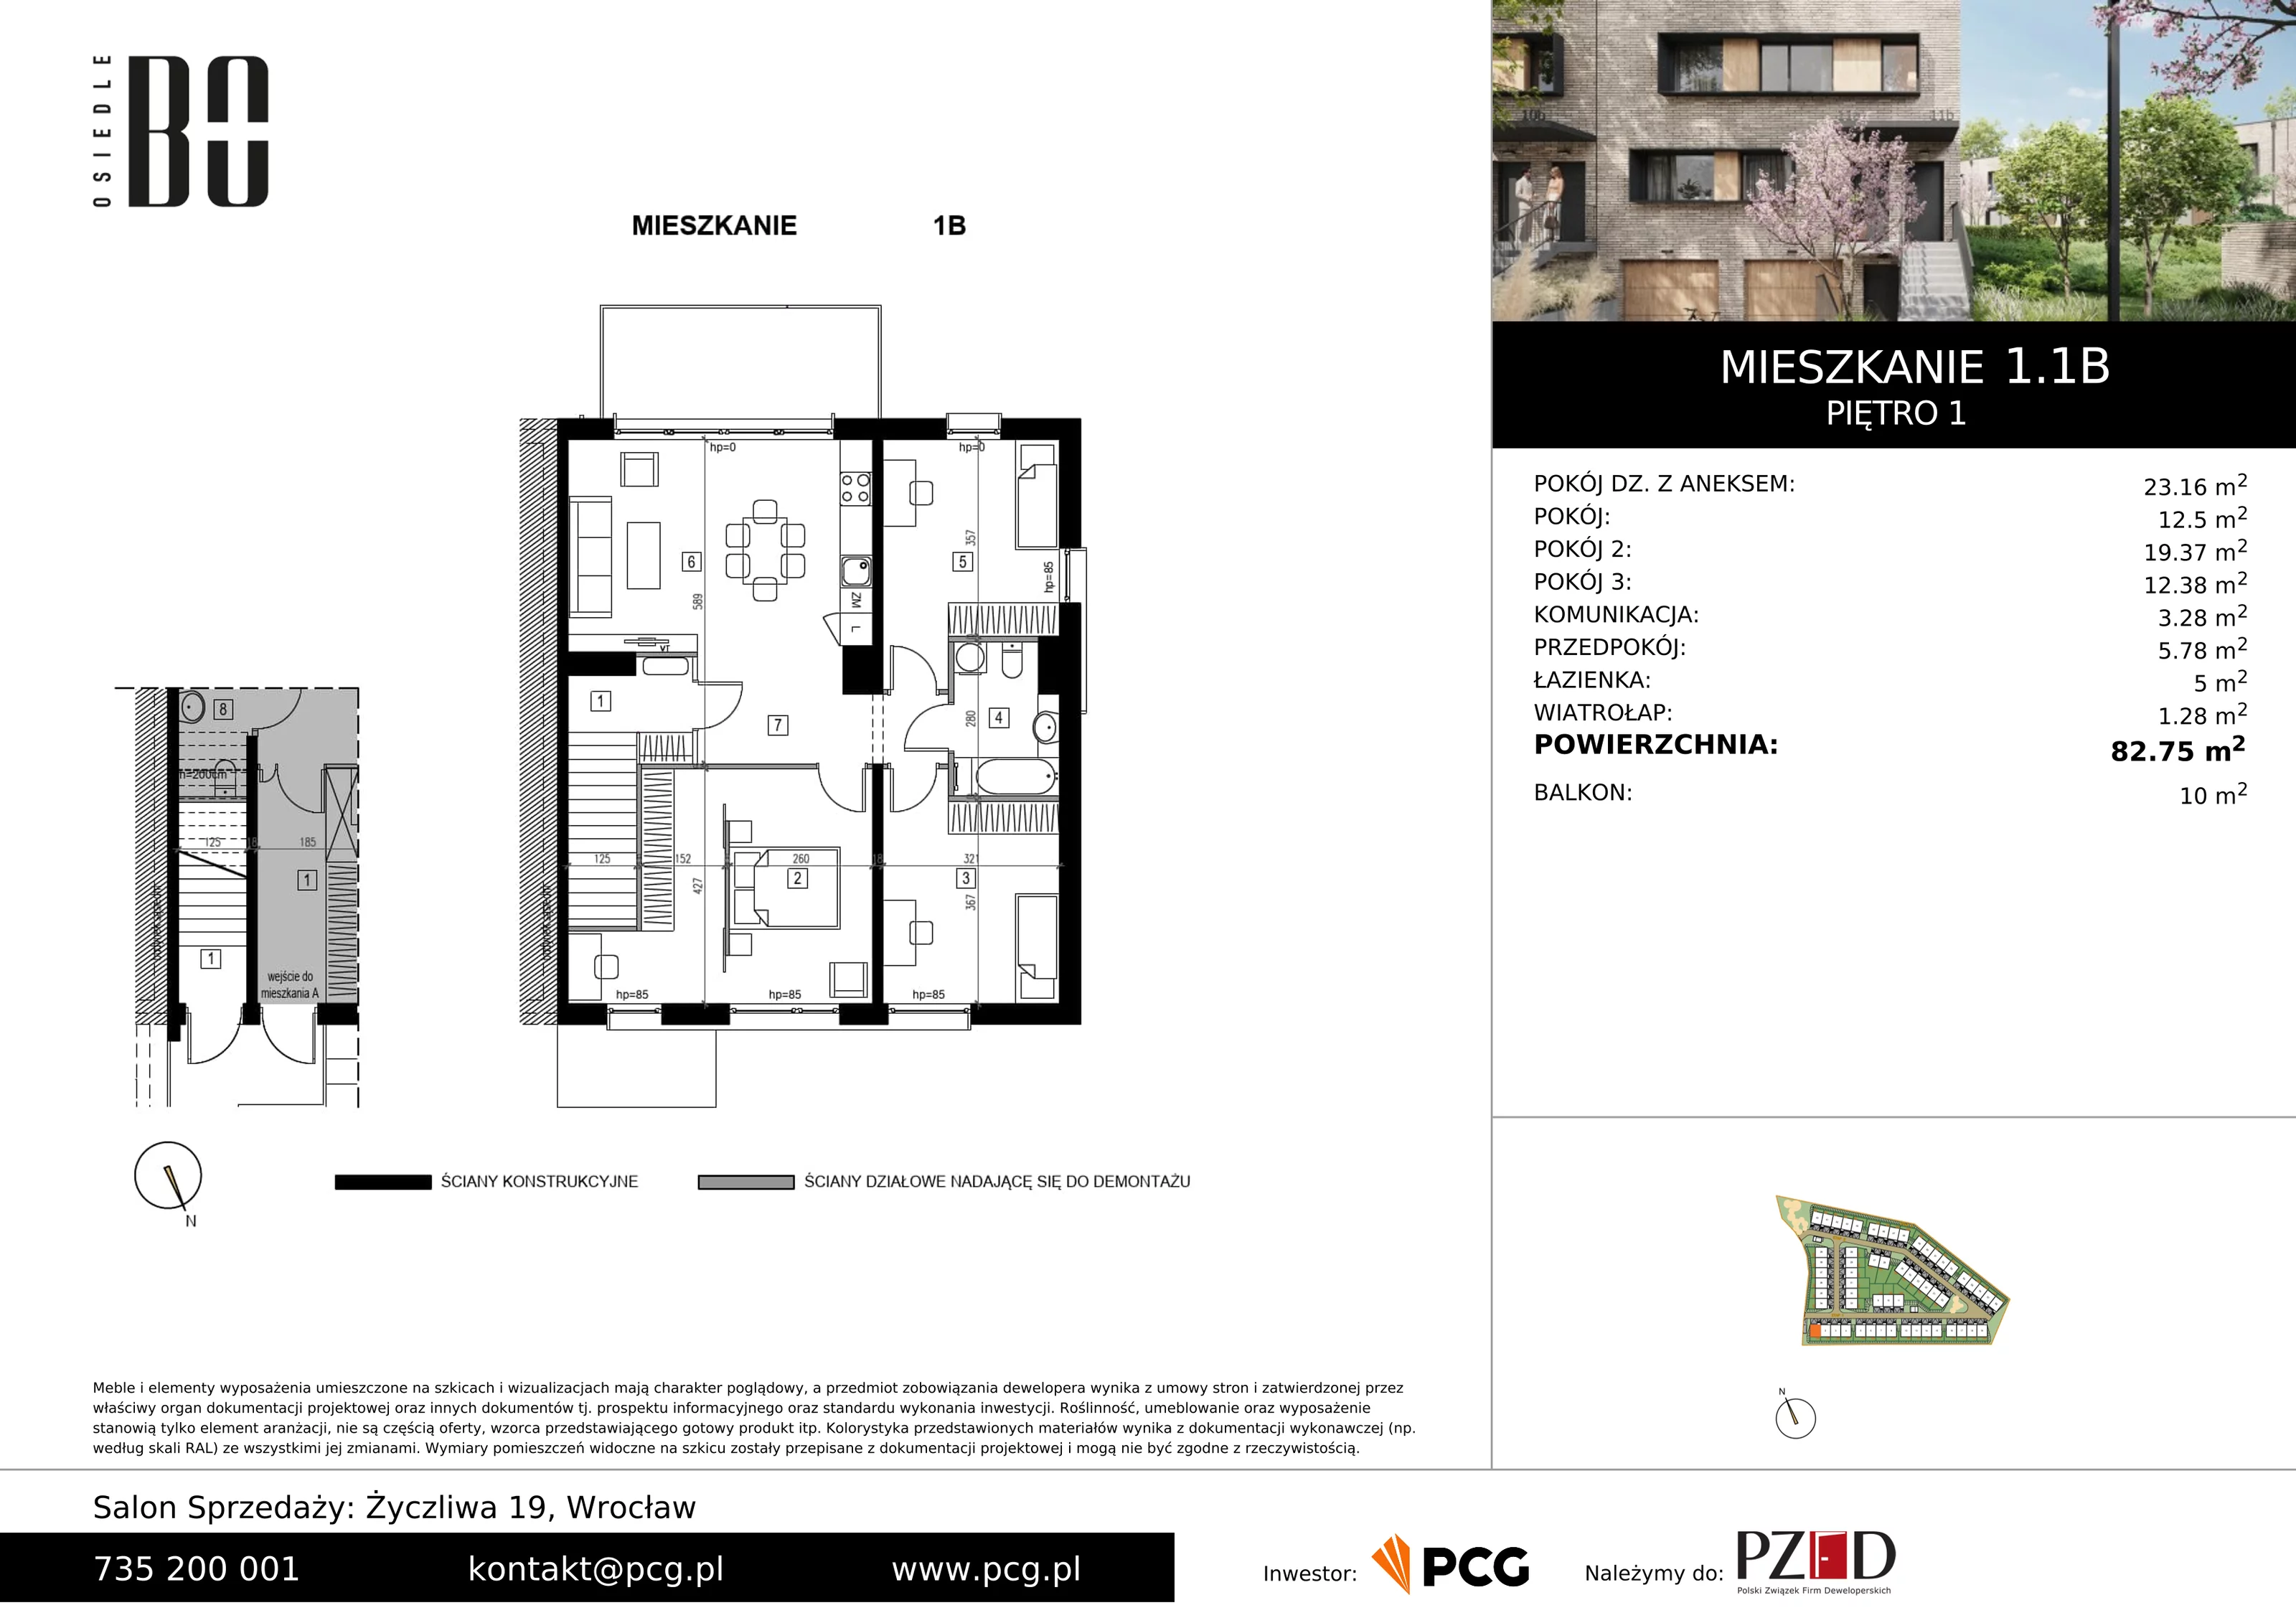 Apartament 82,75 m², piętro 1, oferta nr 1.1B, Osiedle BO, Wrocław, Kowale, ul. Bociana